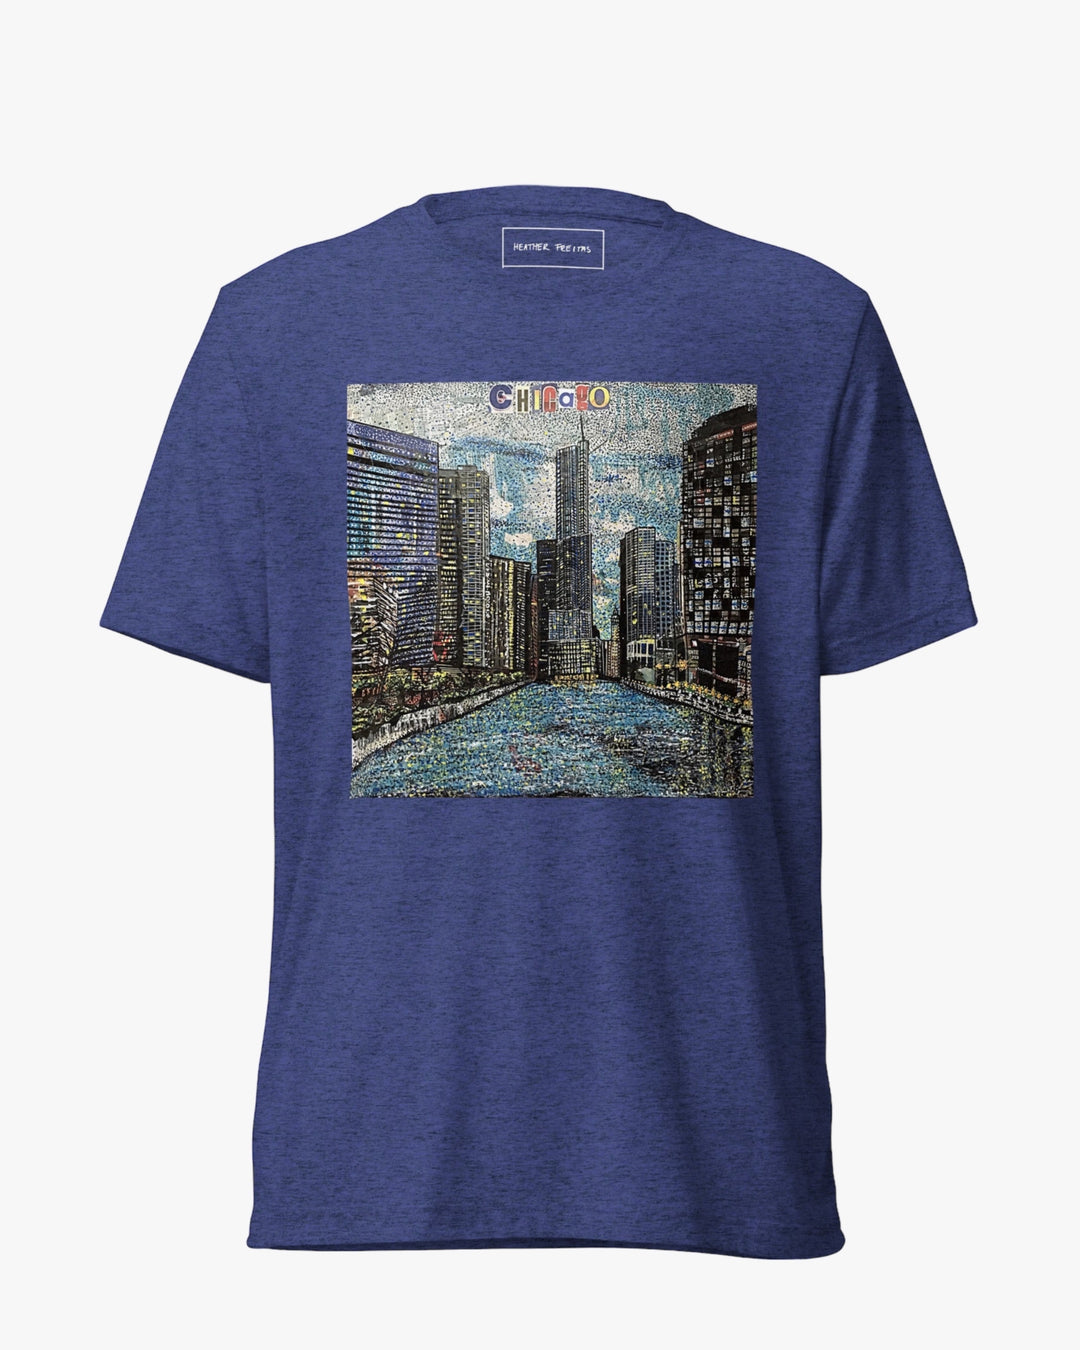 Chicago Unisex Short Sleeve T-shirt